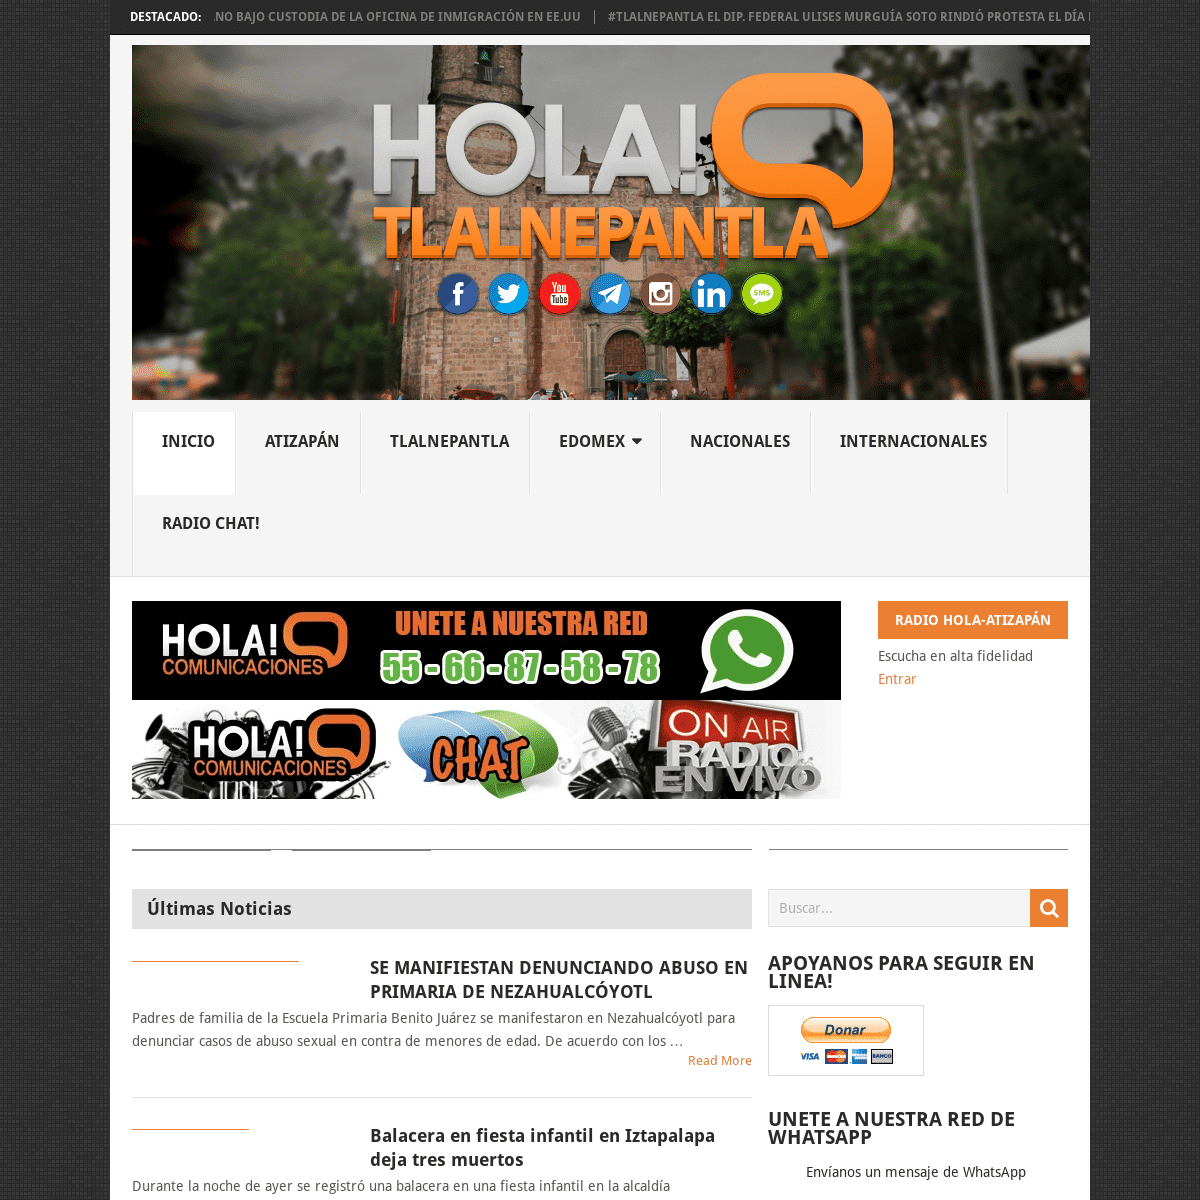 A complete backup of hola-tlalnepantla.com